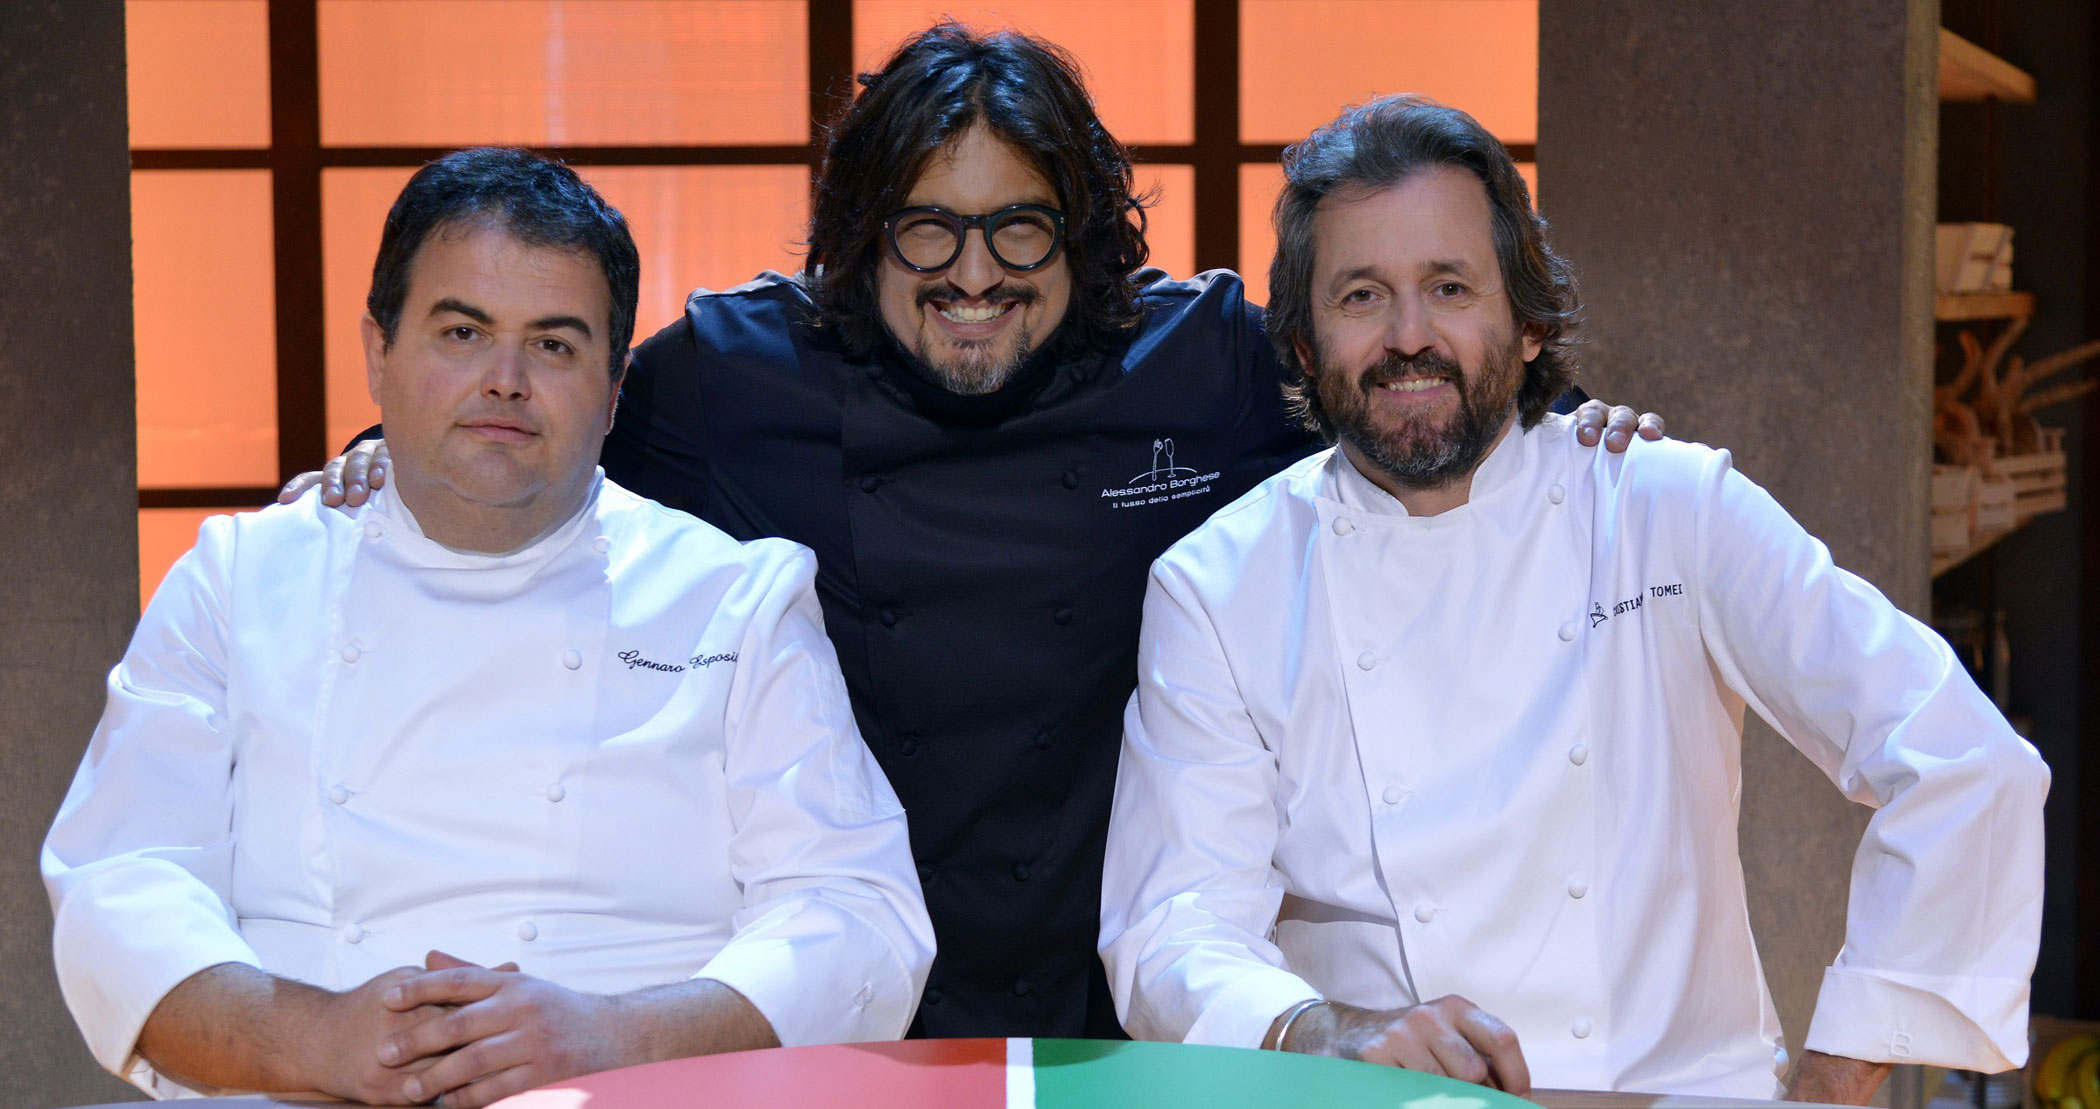 Cuochi d'Italia con Alessandro Borghese su TV8